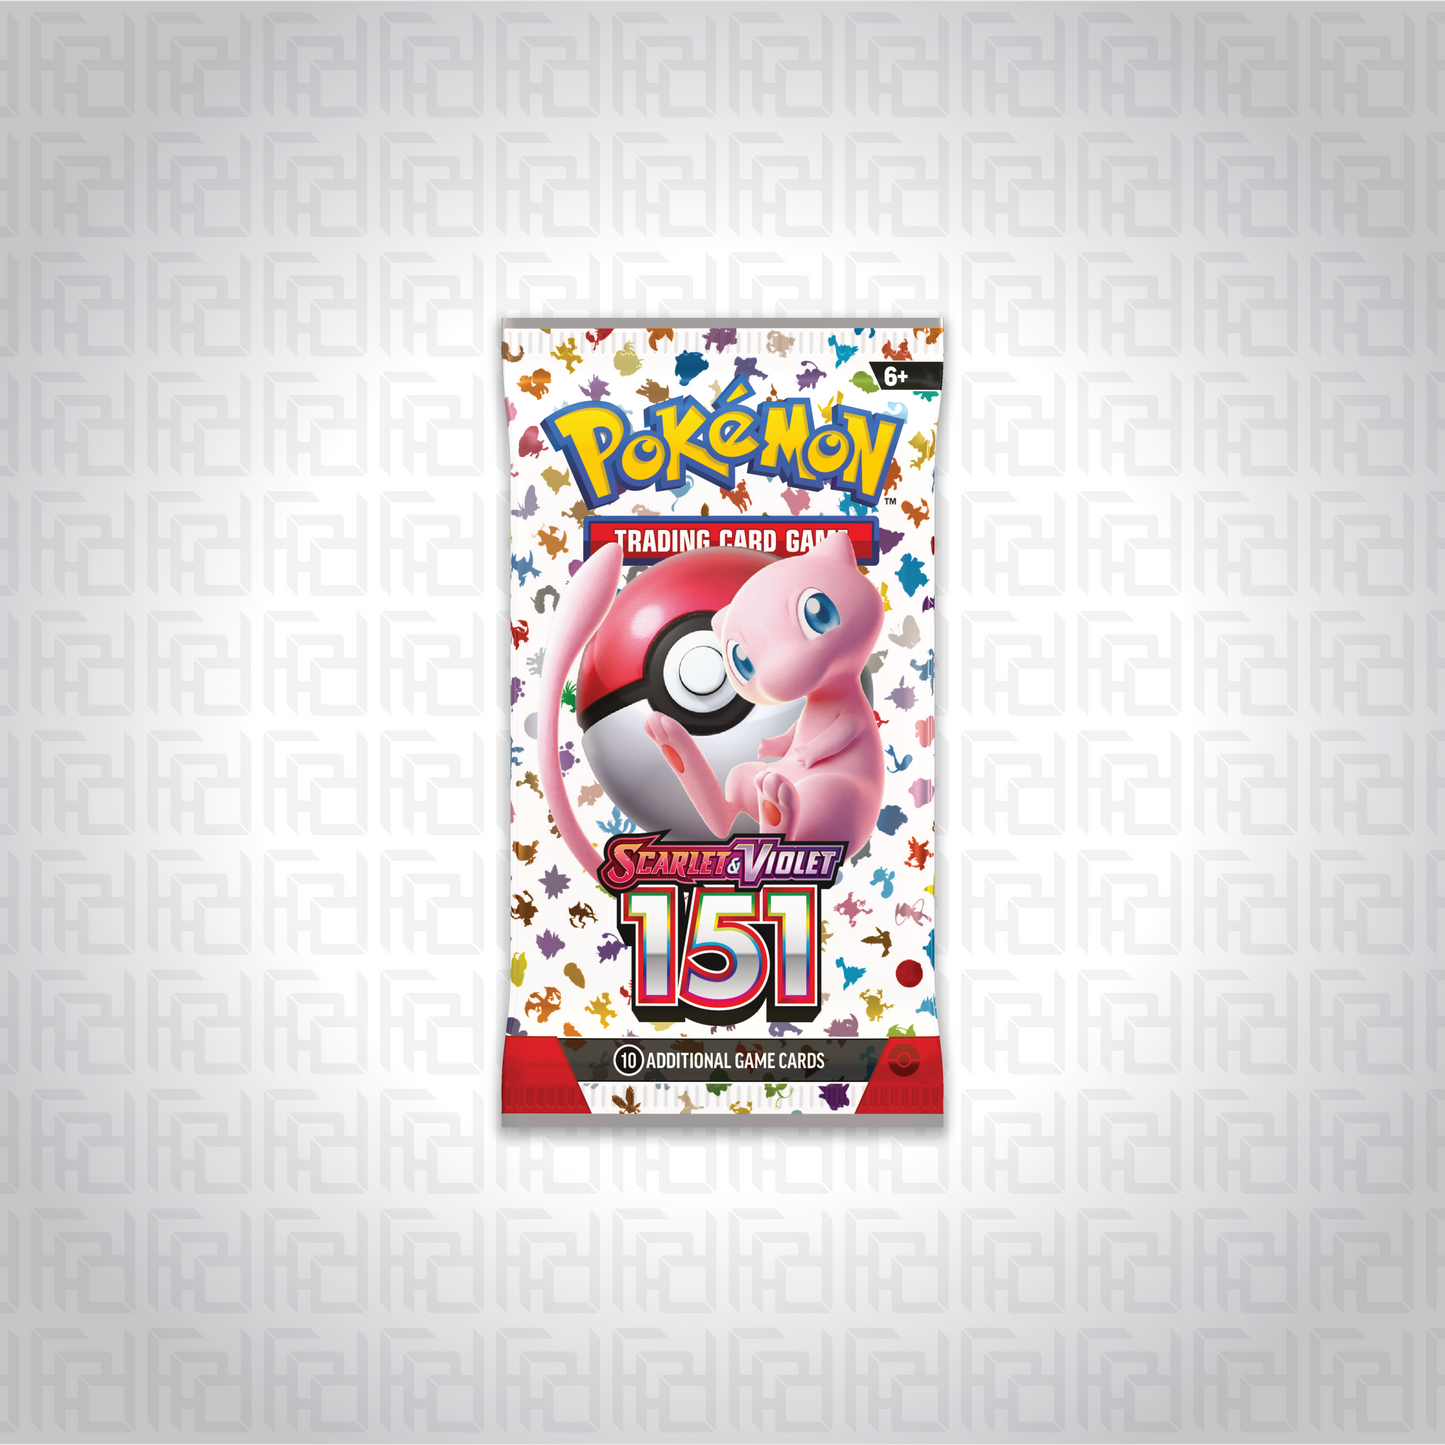 Pokemon TCG: Scarlet & Violet—151 booster pack.